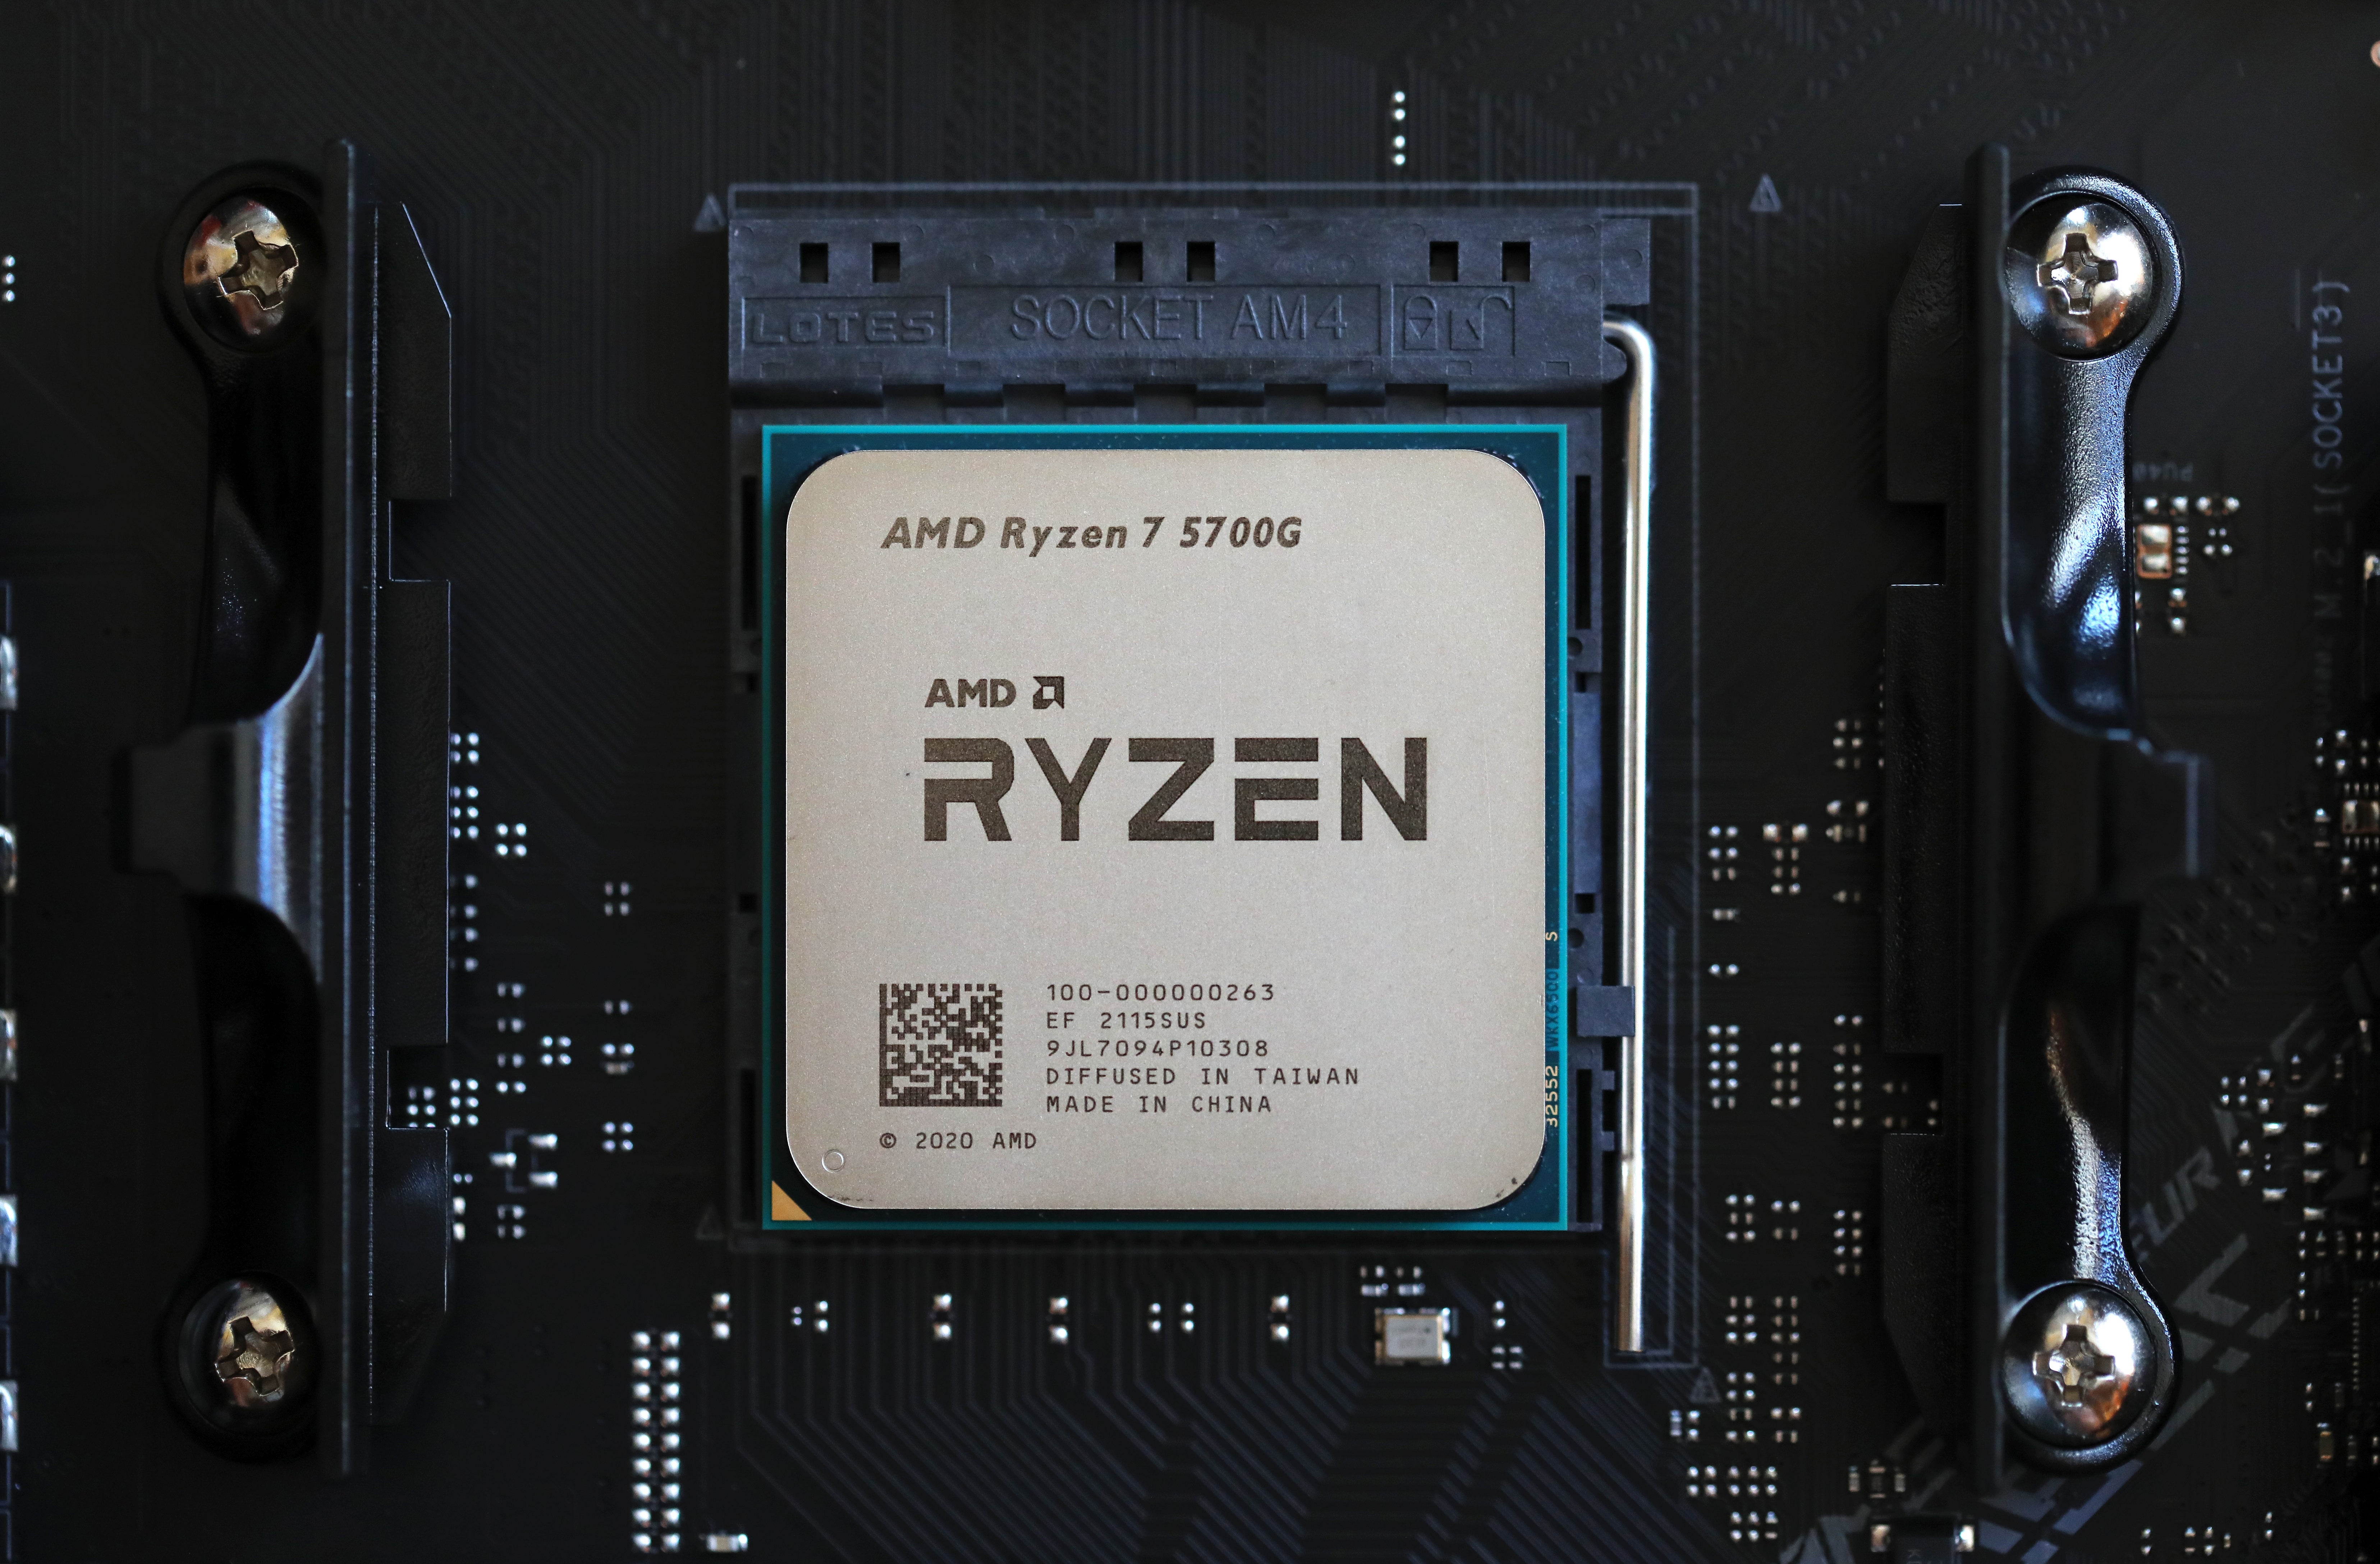 AMD Ryzen 7 5700G on in a motherboard